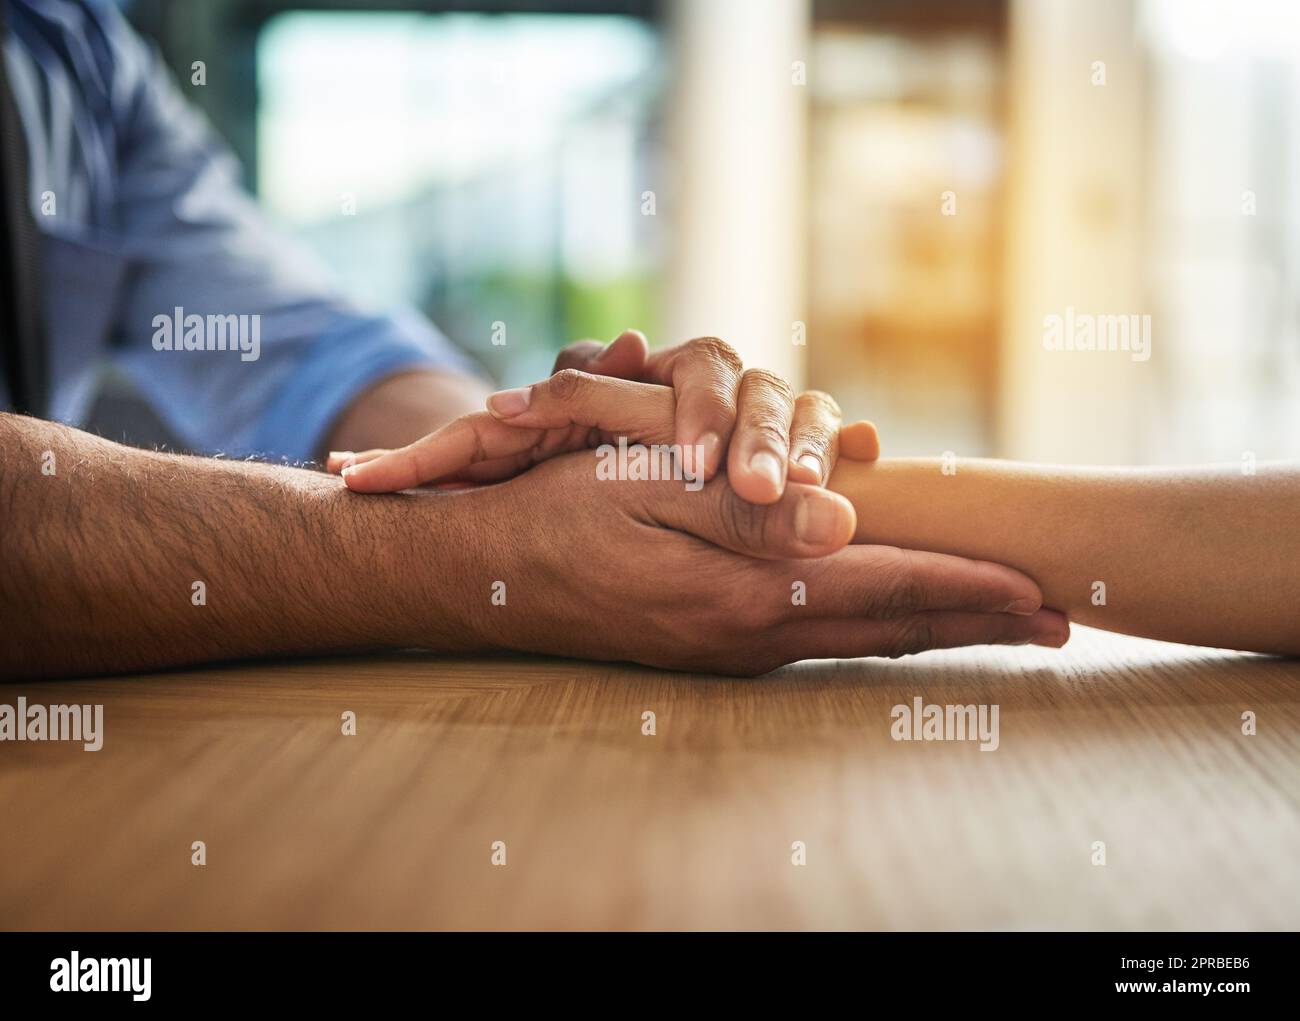 Hände, die in einem Moment, in dem sie sich berühren und verbinden, mit Liebe, Unterstützung und Fürsorge zusammenhalten. Nahaufnahme eines nahen, liebevollen Handgriffs zwischen zwei Menschen zusammen. Tröstende Geste des Mitgefühls und der Gemeinschaft Stockfoto